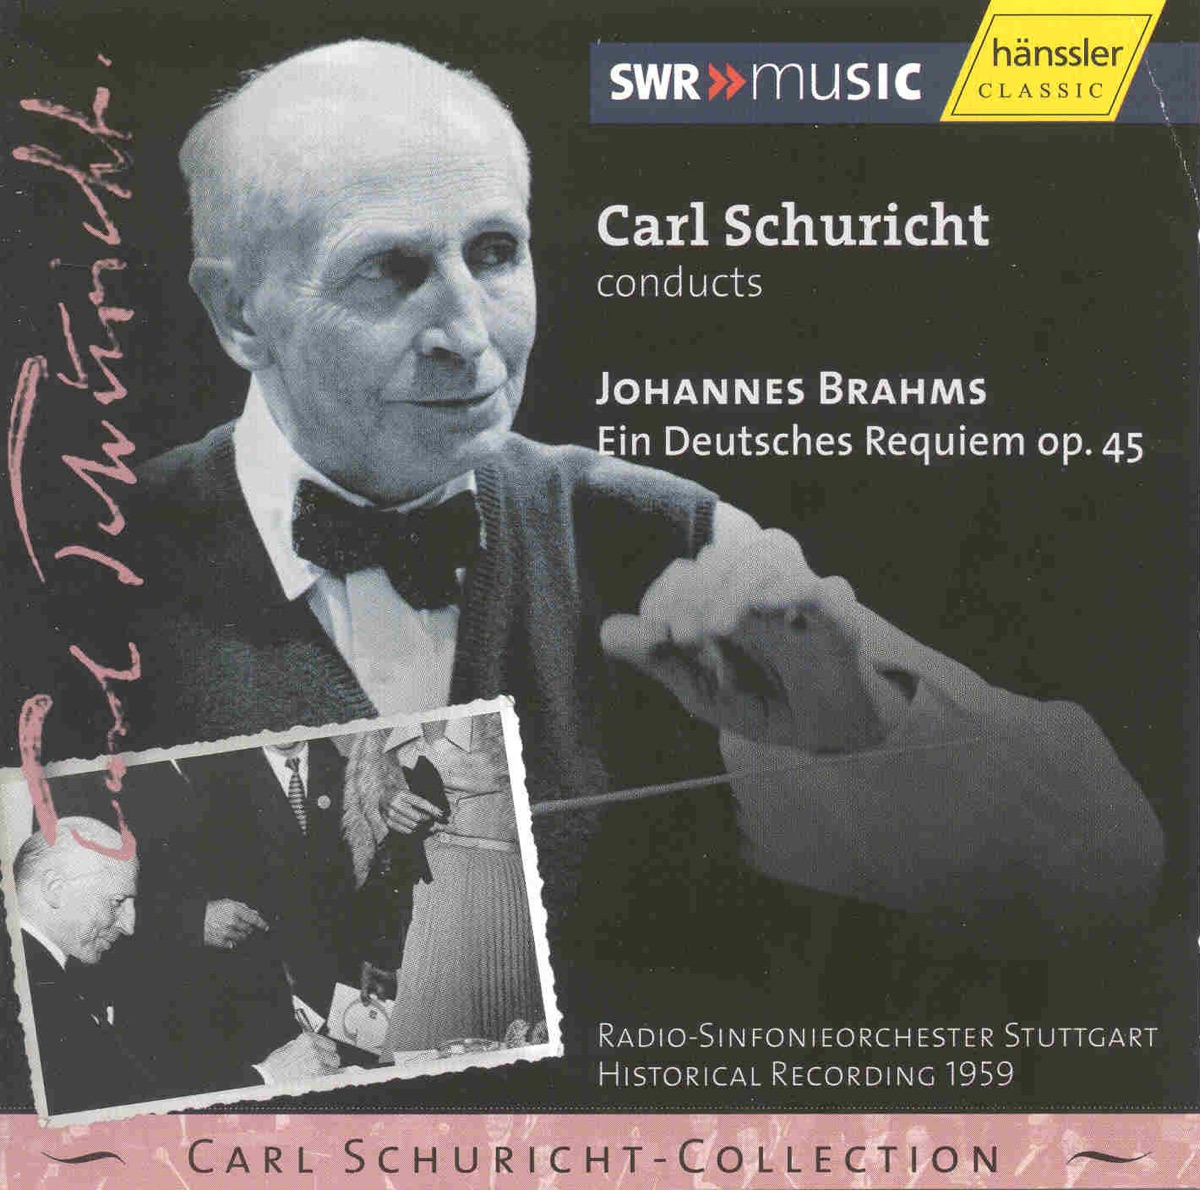 Brahms: Ein deutsches Requiem (A German Requiem) — álbum de